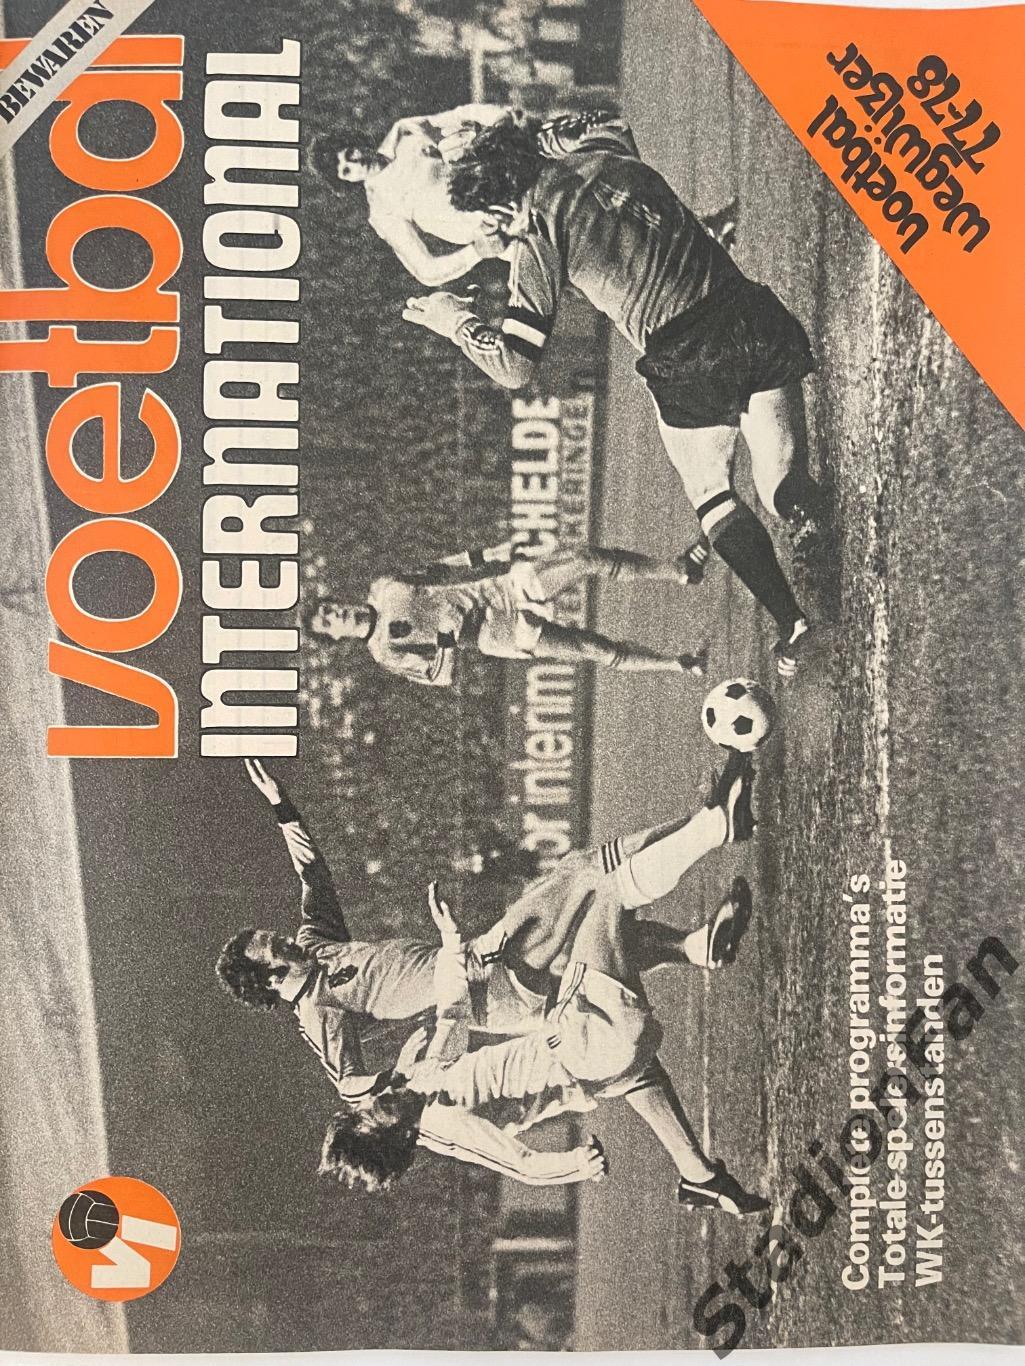 Журнал Voetbal nr.32 - 1977 год. 4